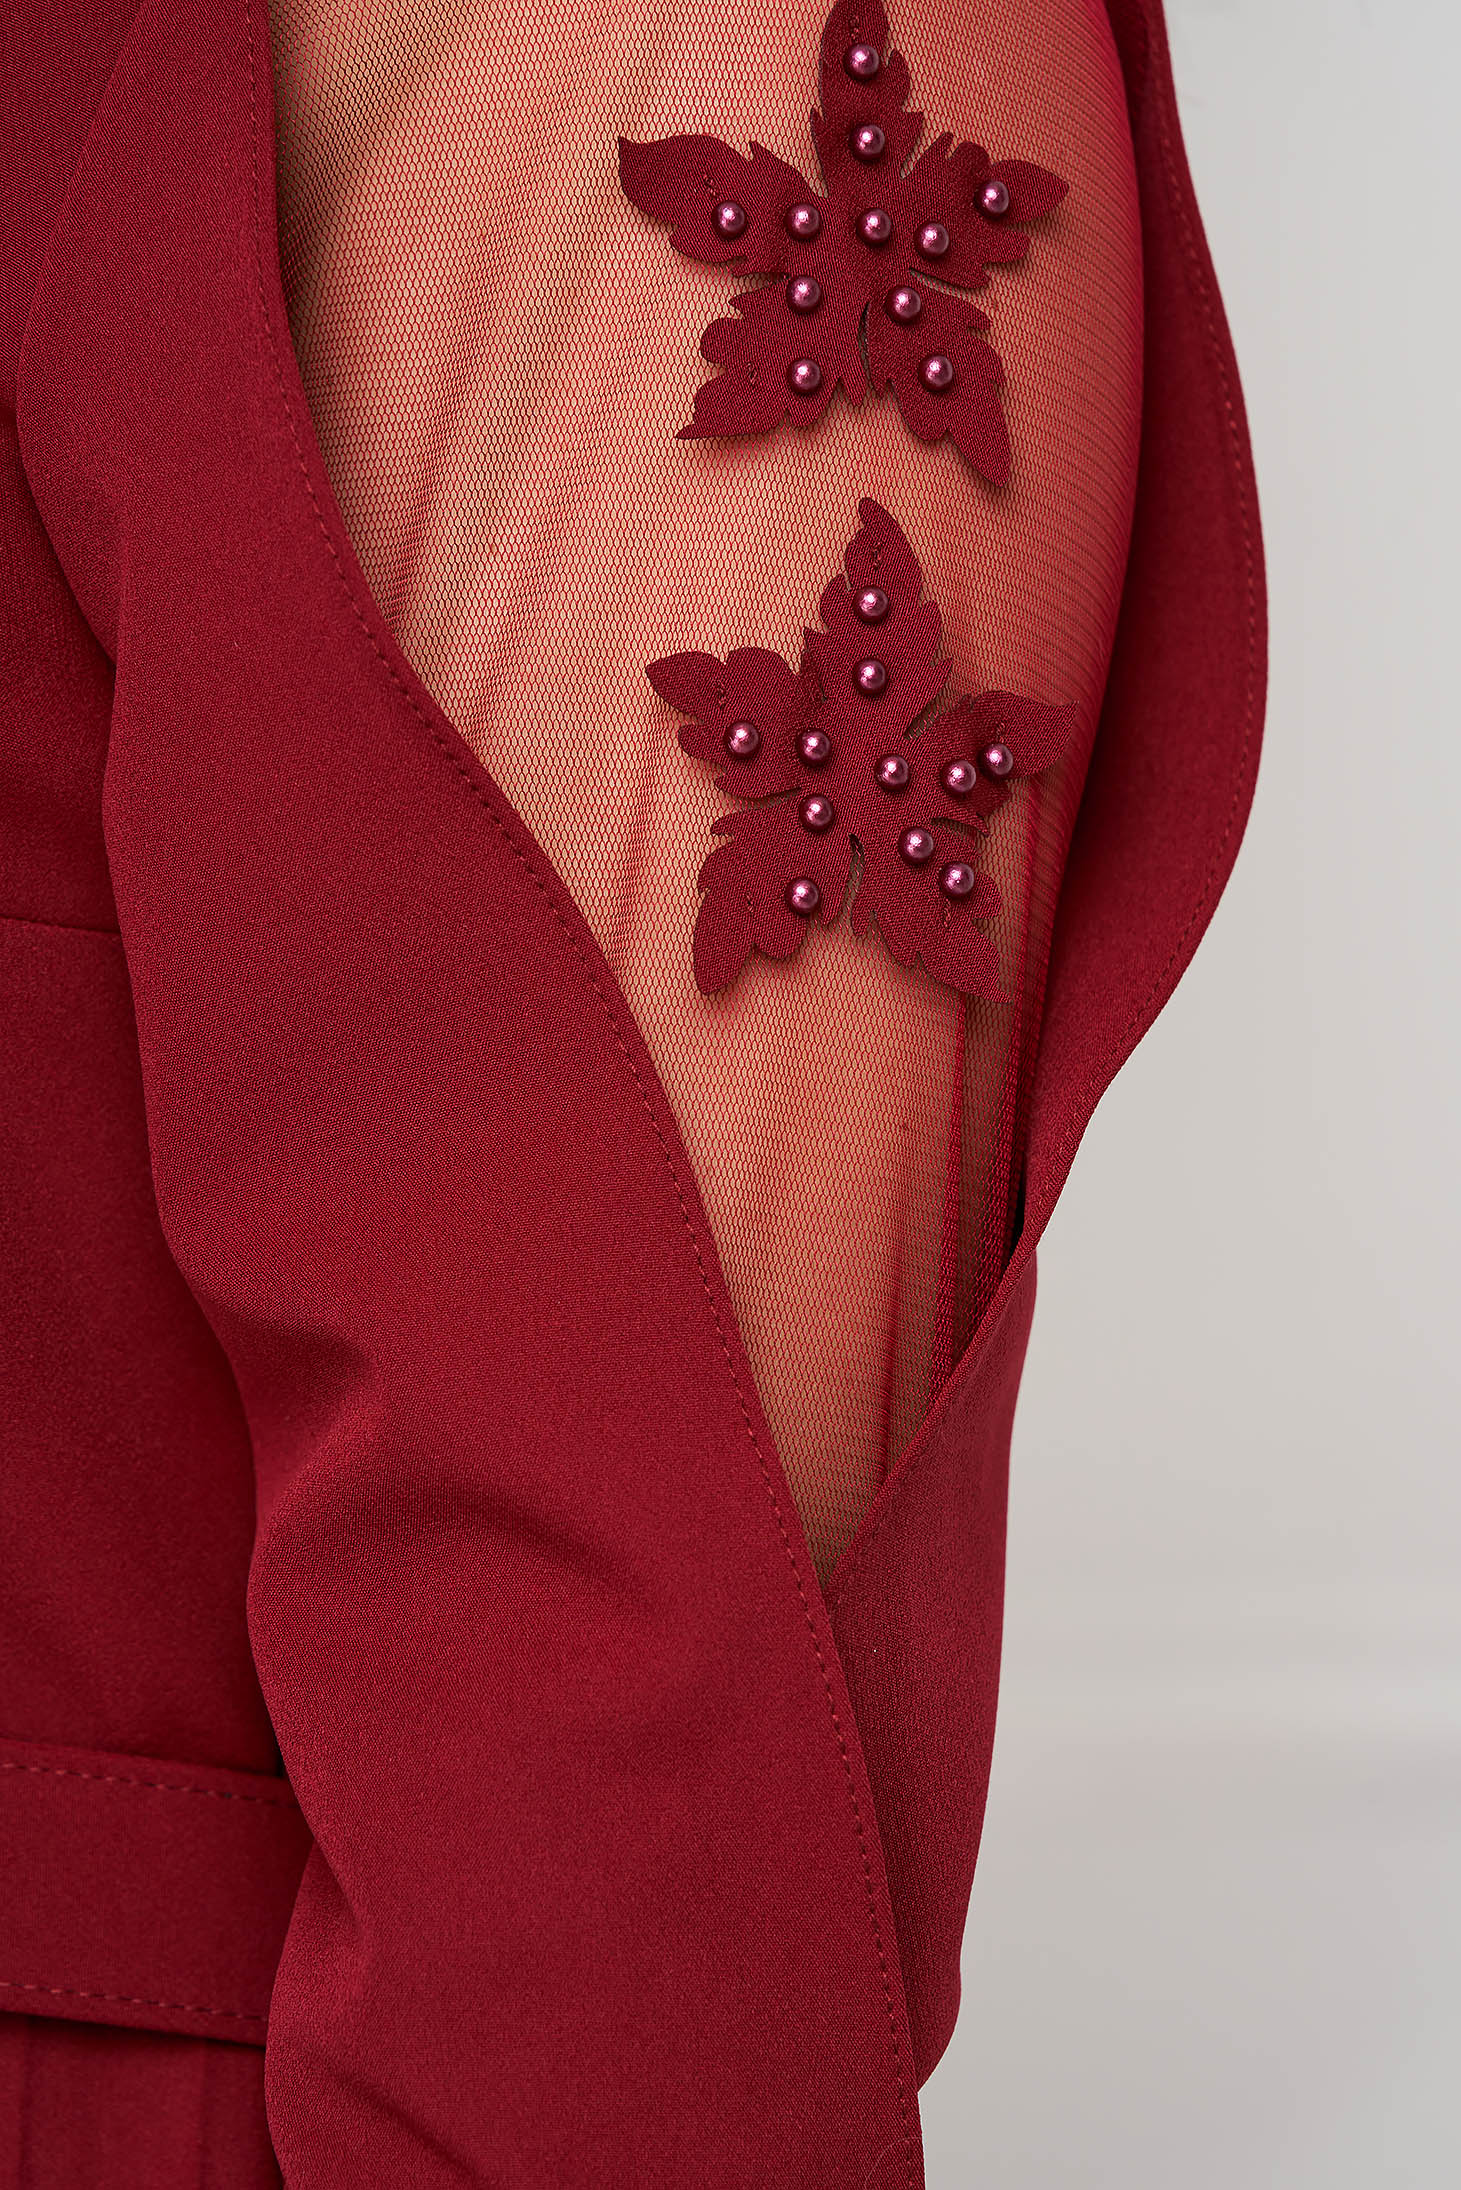 Rochie plisata din stofa usor elastica visinie in clos cu flori in relief pe manecile decupate 6 - StarShinerS.ro